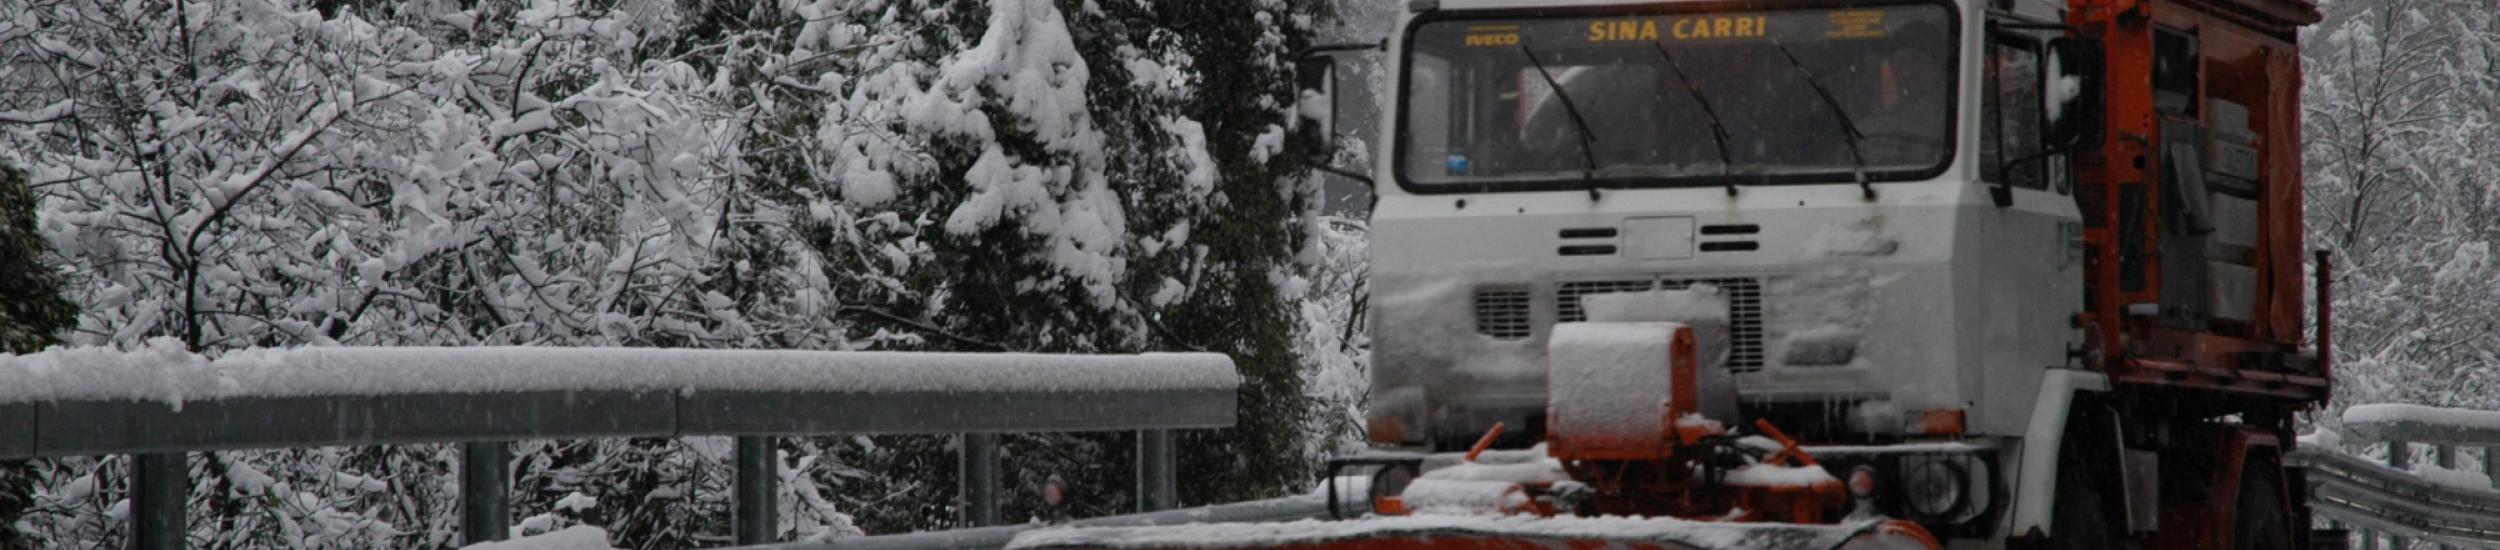 Mezzi della Città Metropolitana al lavoro per l'allerta neve.